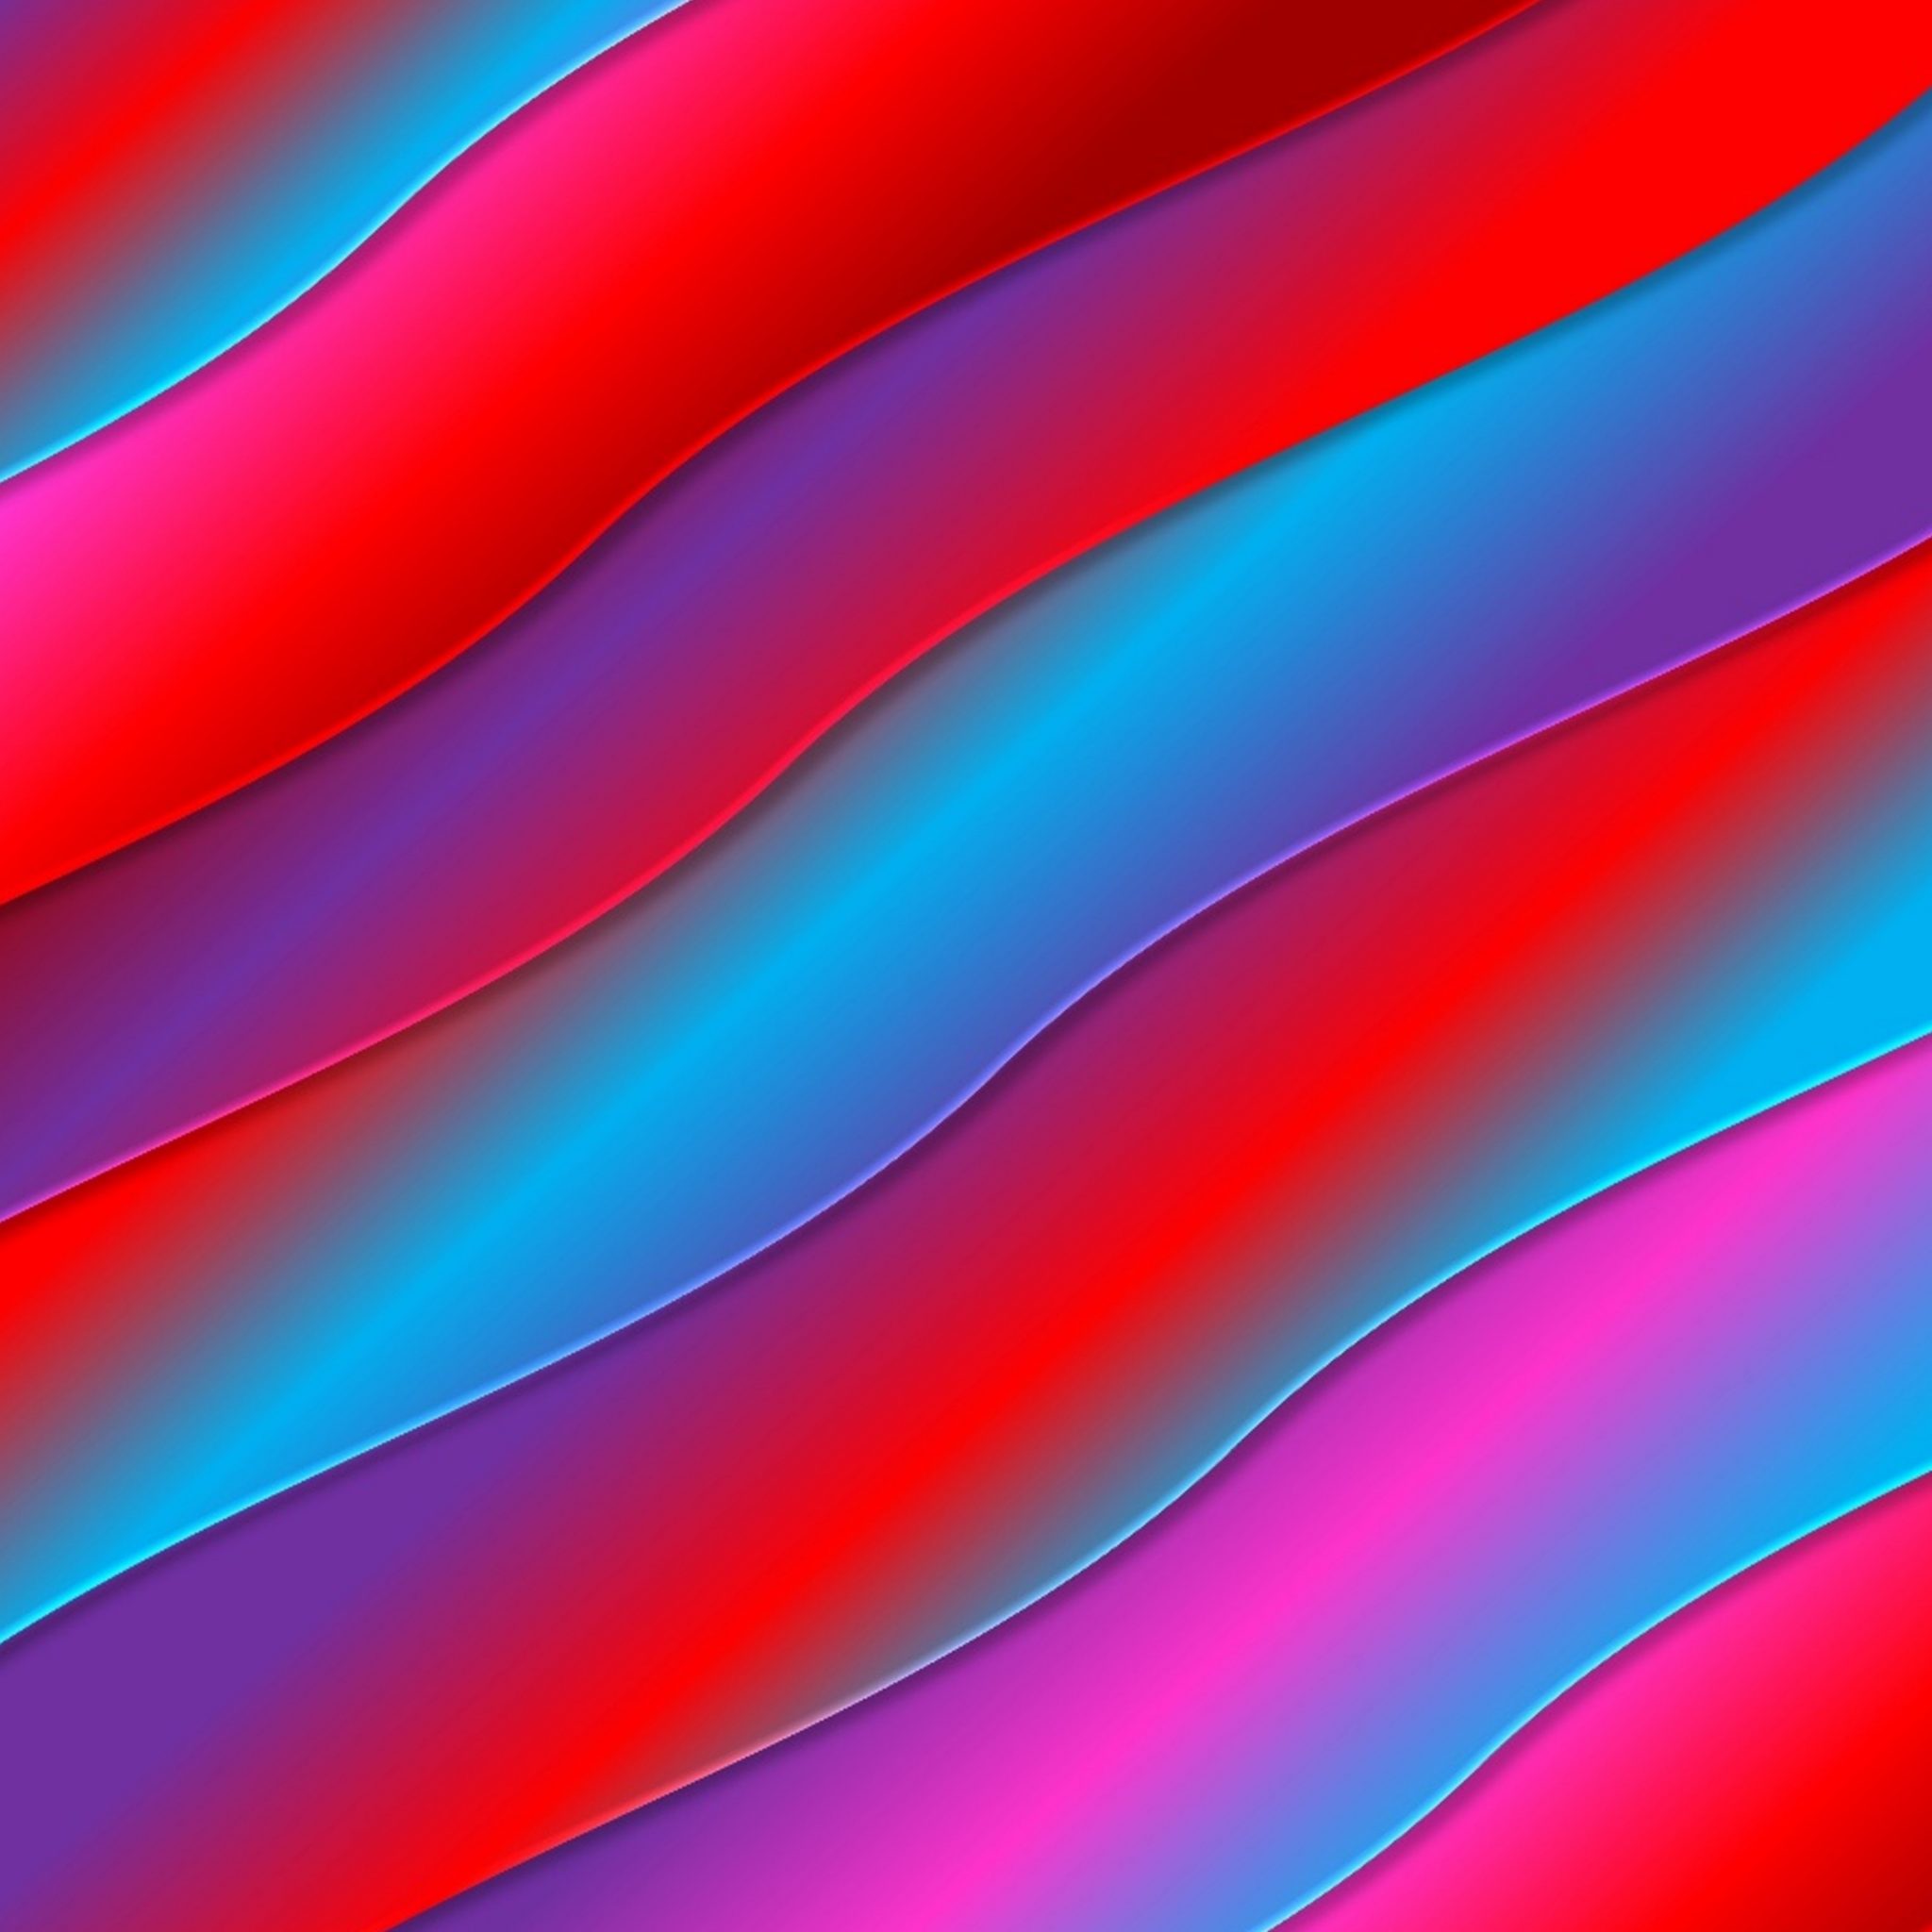 2048x2048 wallpapers iPad retina 3D Vivid Color Waves Gradient Geometric iPad Wallpaper 2048x2048 pixels resolution